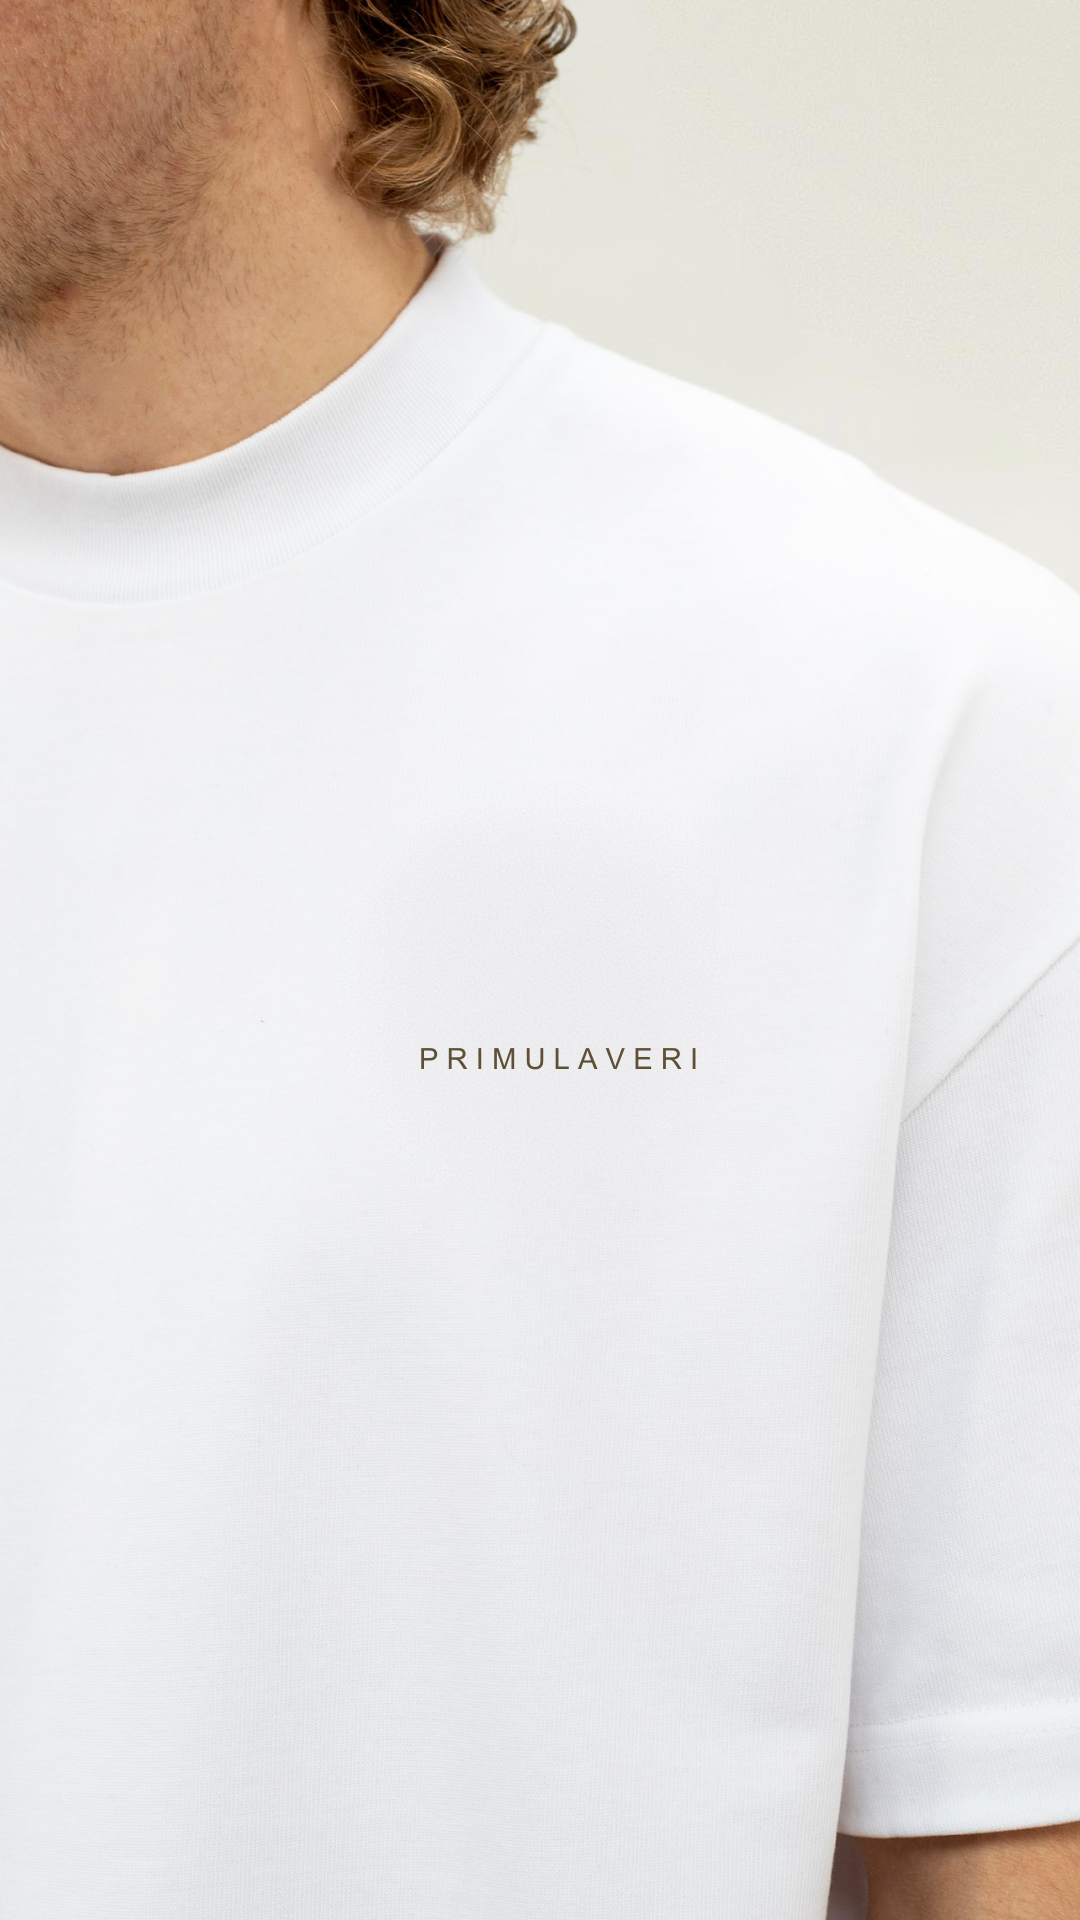 PV T Shirt - Brown Print